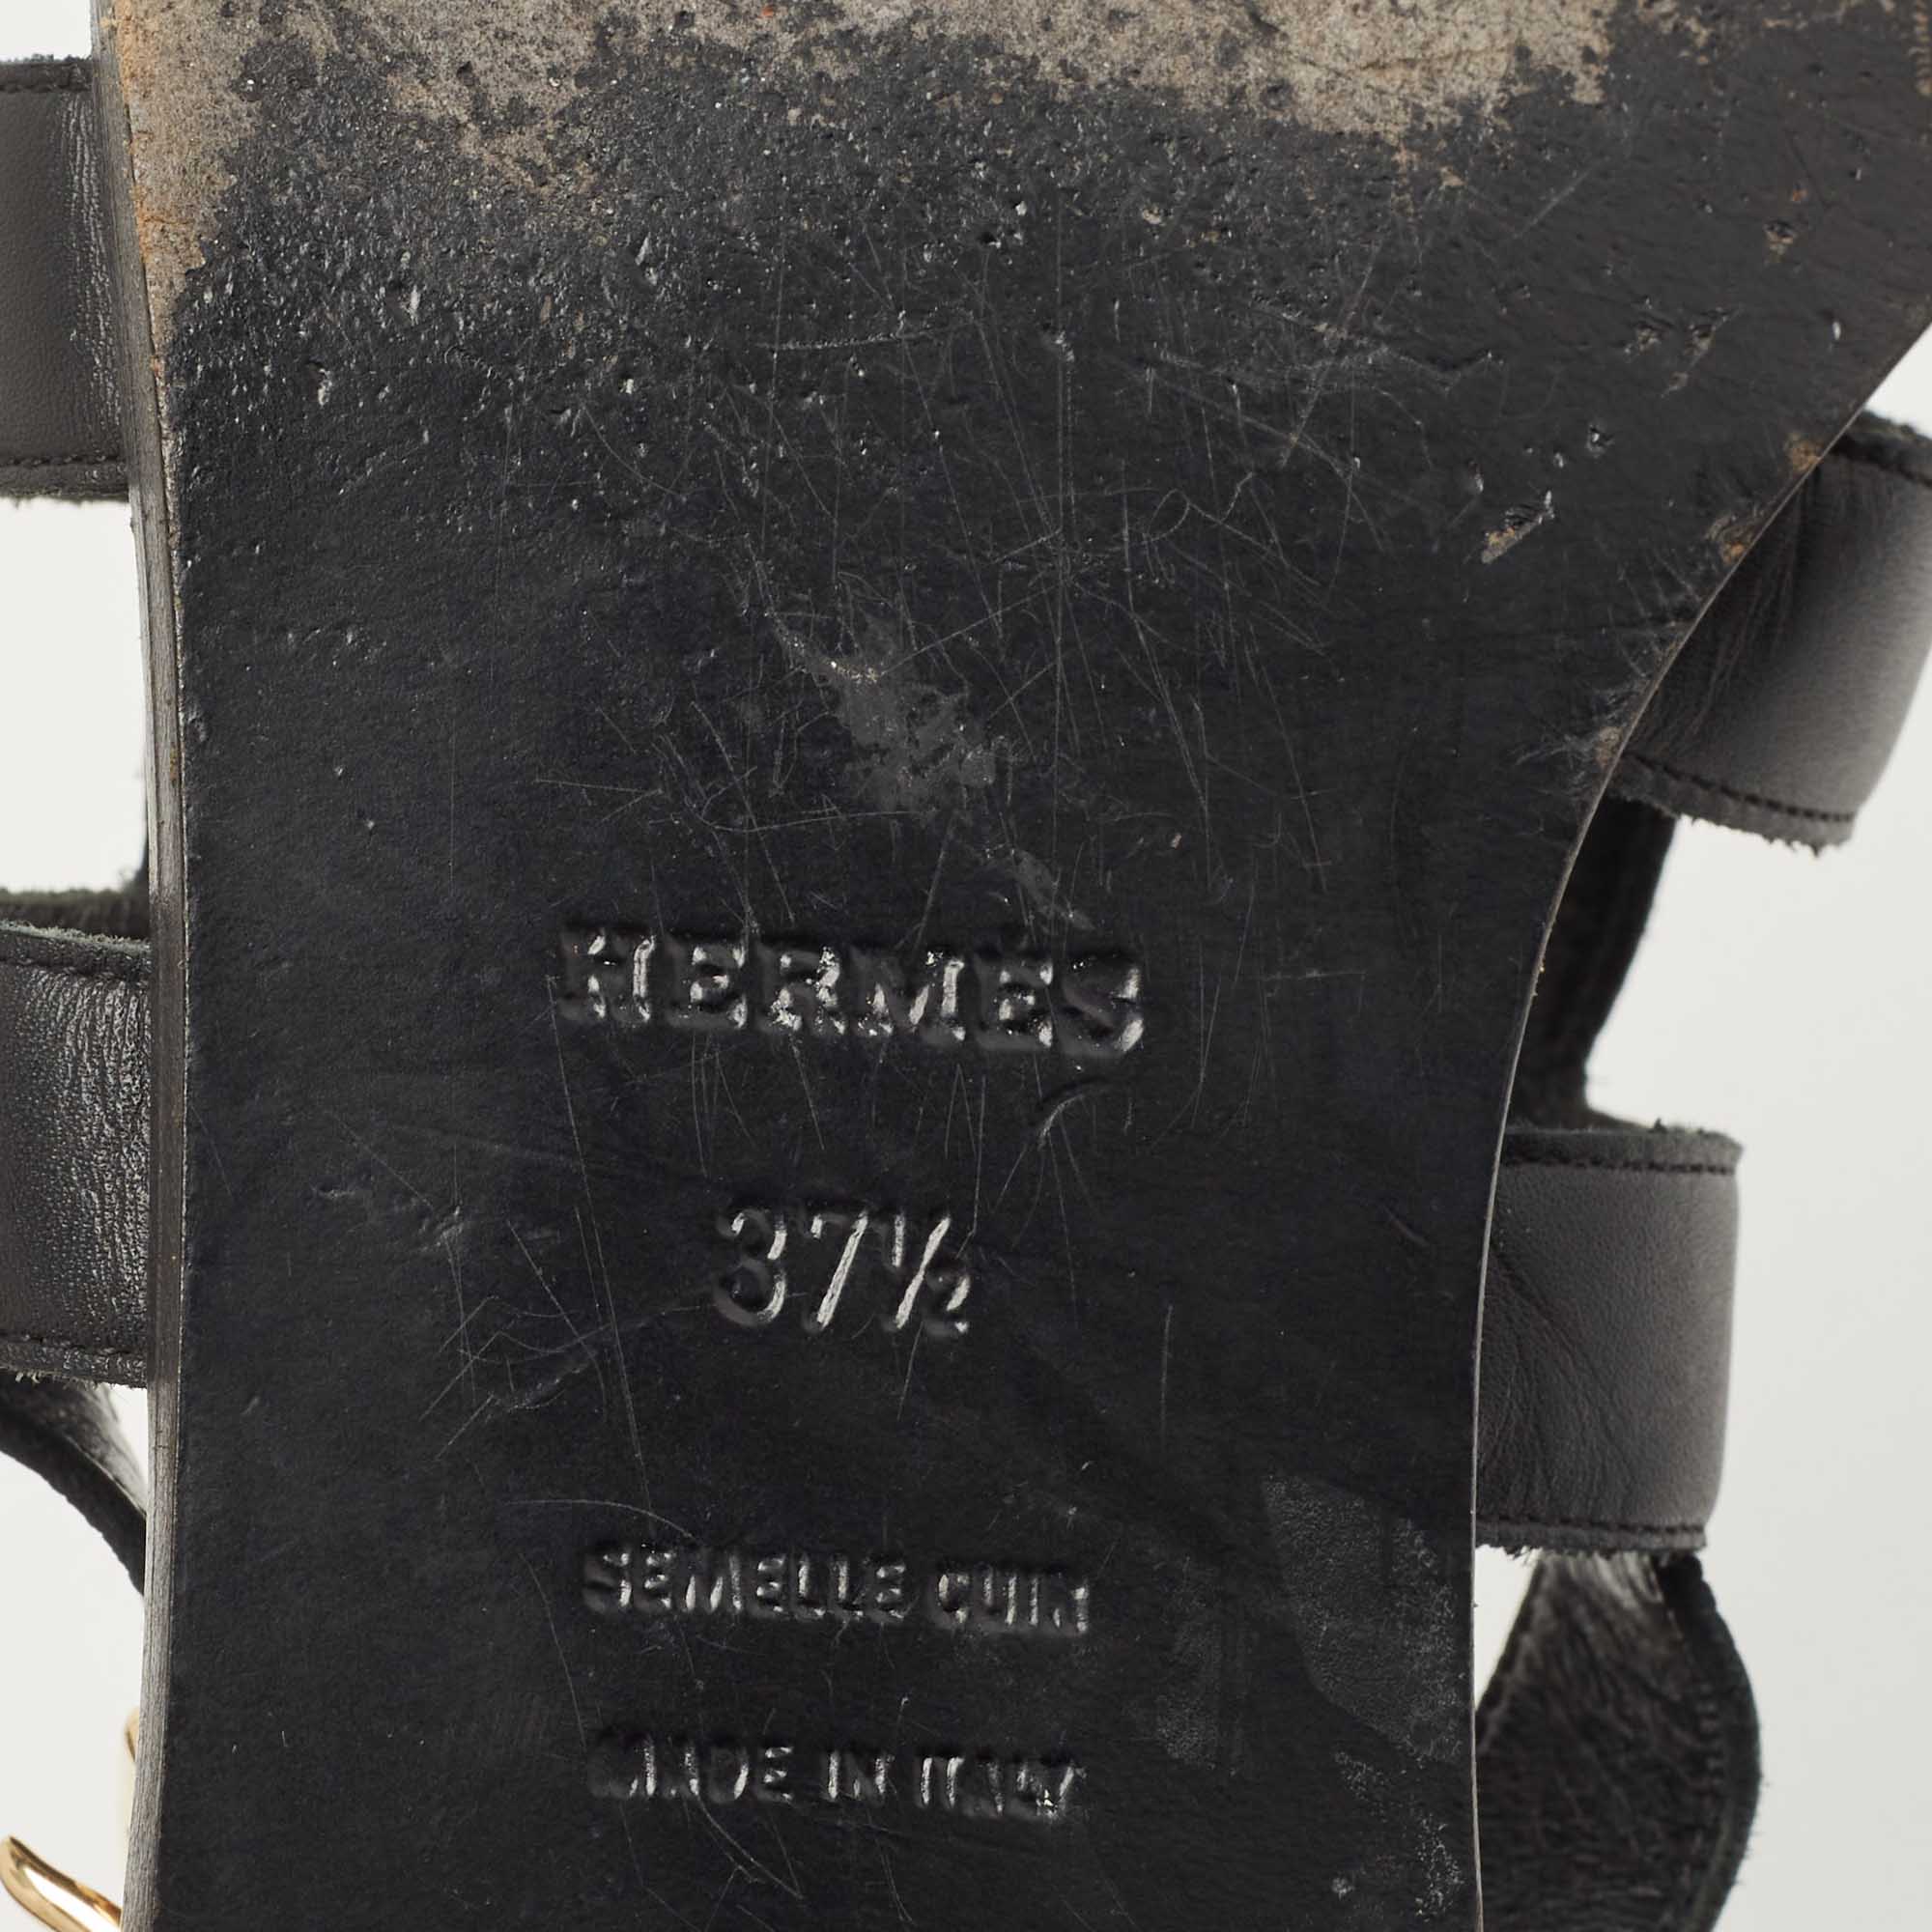 Hermes Black Leather Studded Slingback Sandals Size 37.5